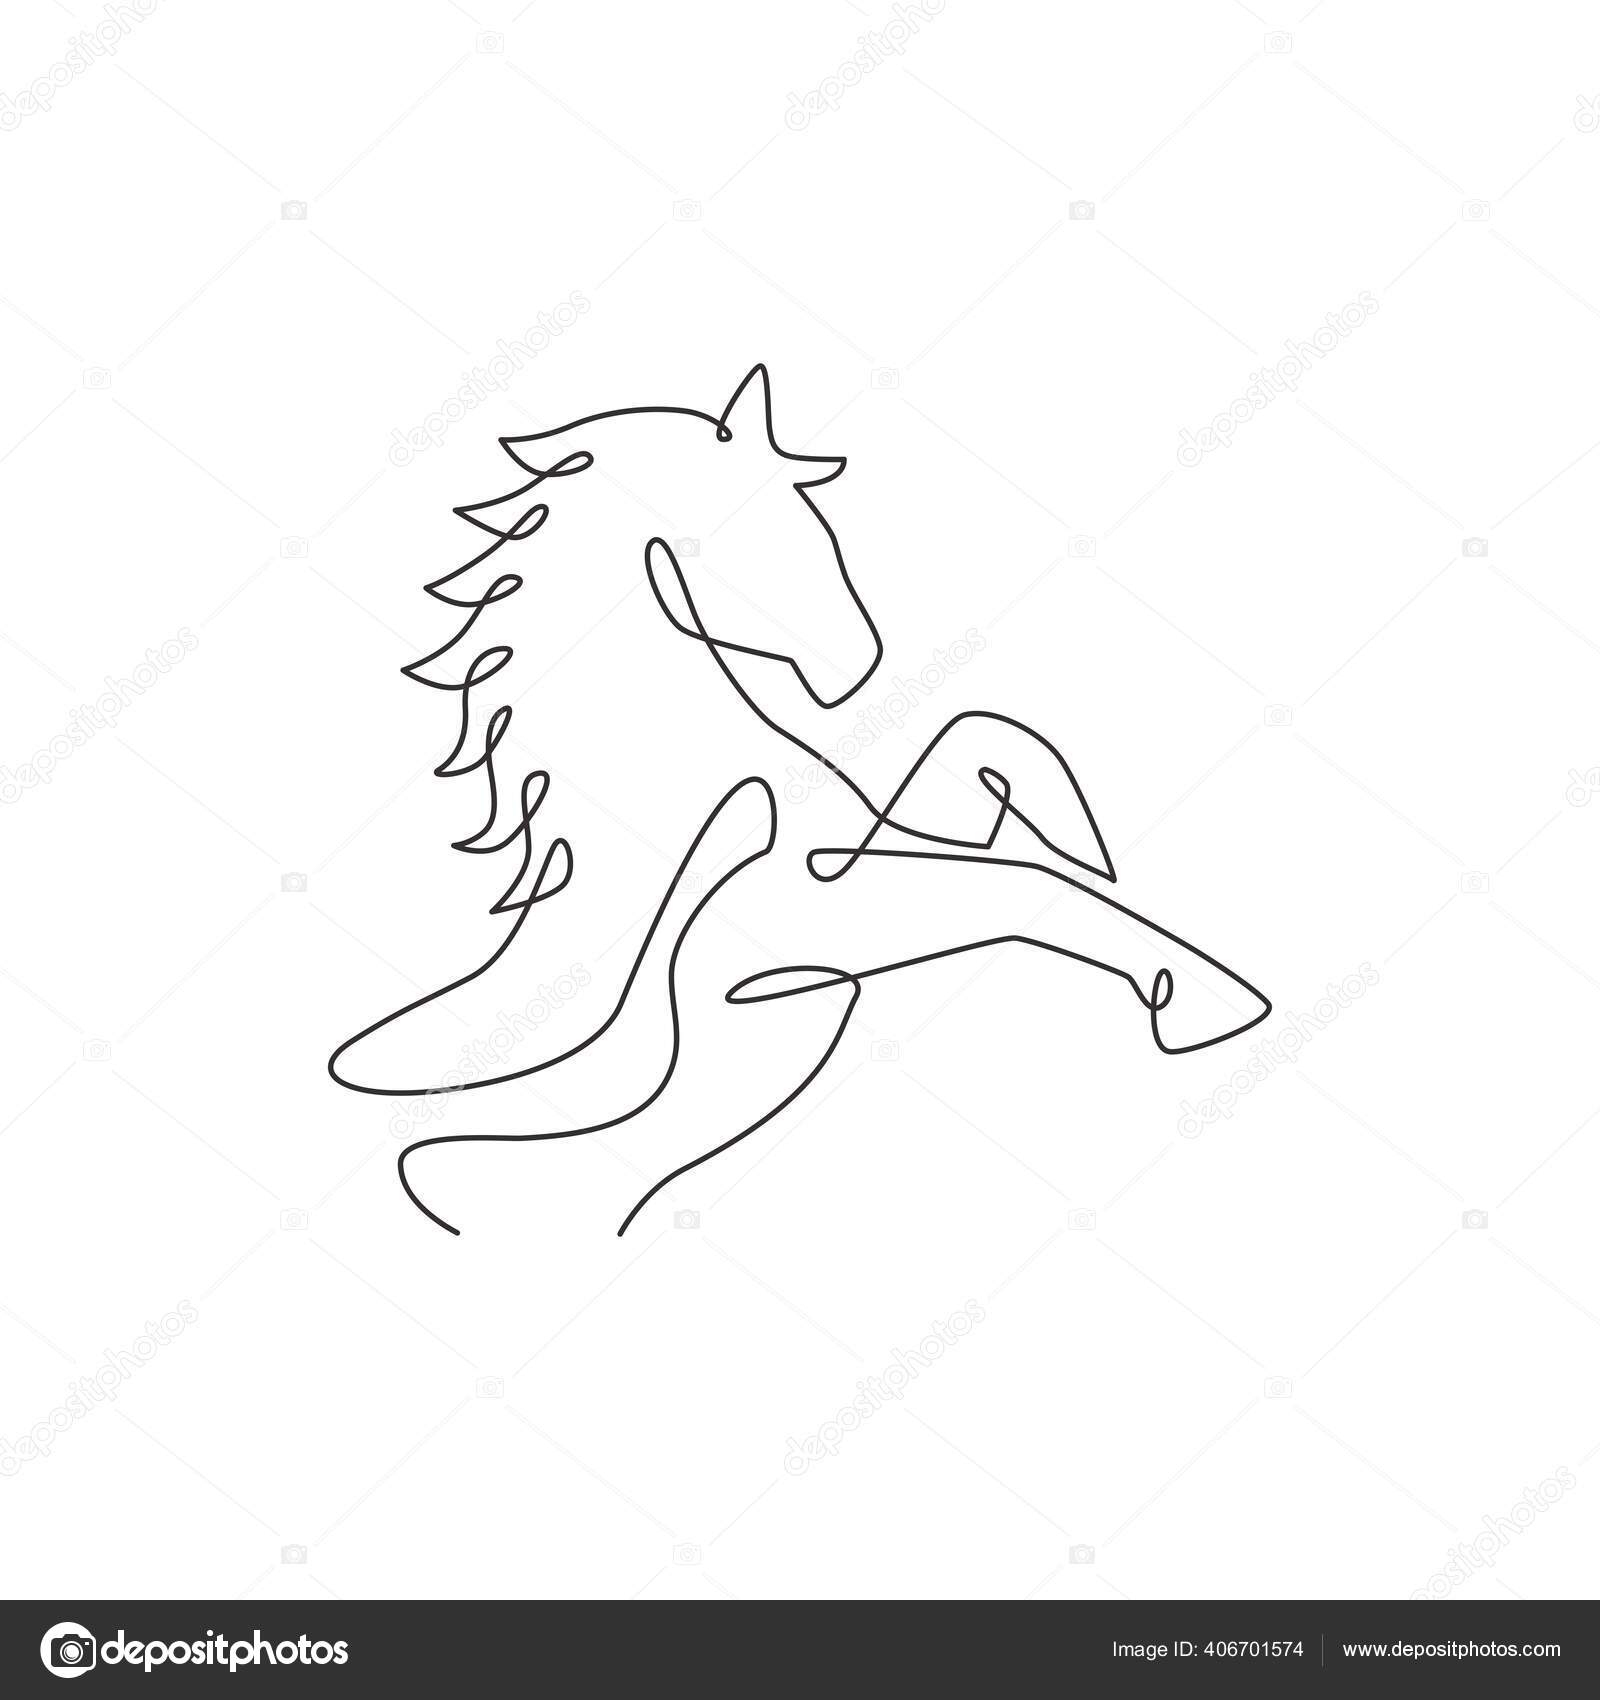 um desenho de linha contínua de um cavalo de elegância de luxo para a  identidade do logotipo da corporação. conceito de símbolo animal de  mamífero de cabeça equina forte. ilustração de desenho